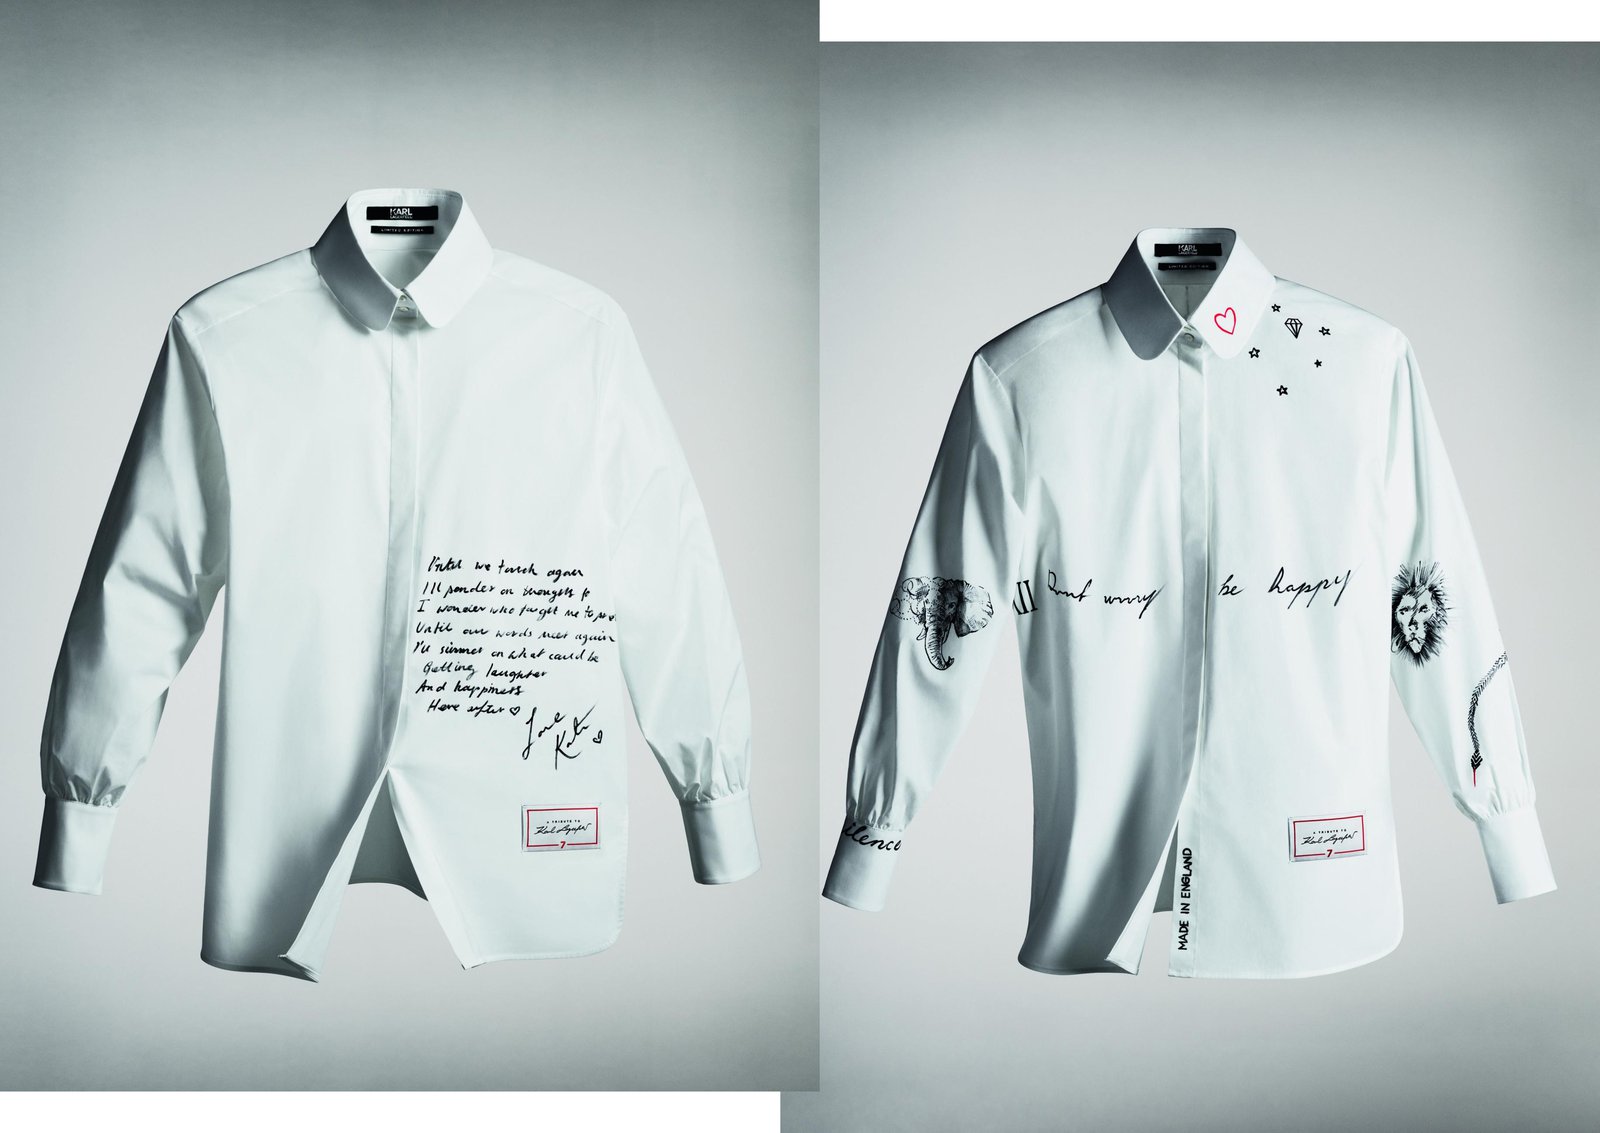 Salt: главное здесь, остальное по вкусу - Рубашки-посвящения Лагерфельду от Кейт Мосс (слева) и Кары Делевинь